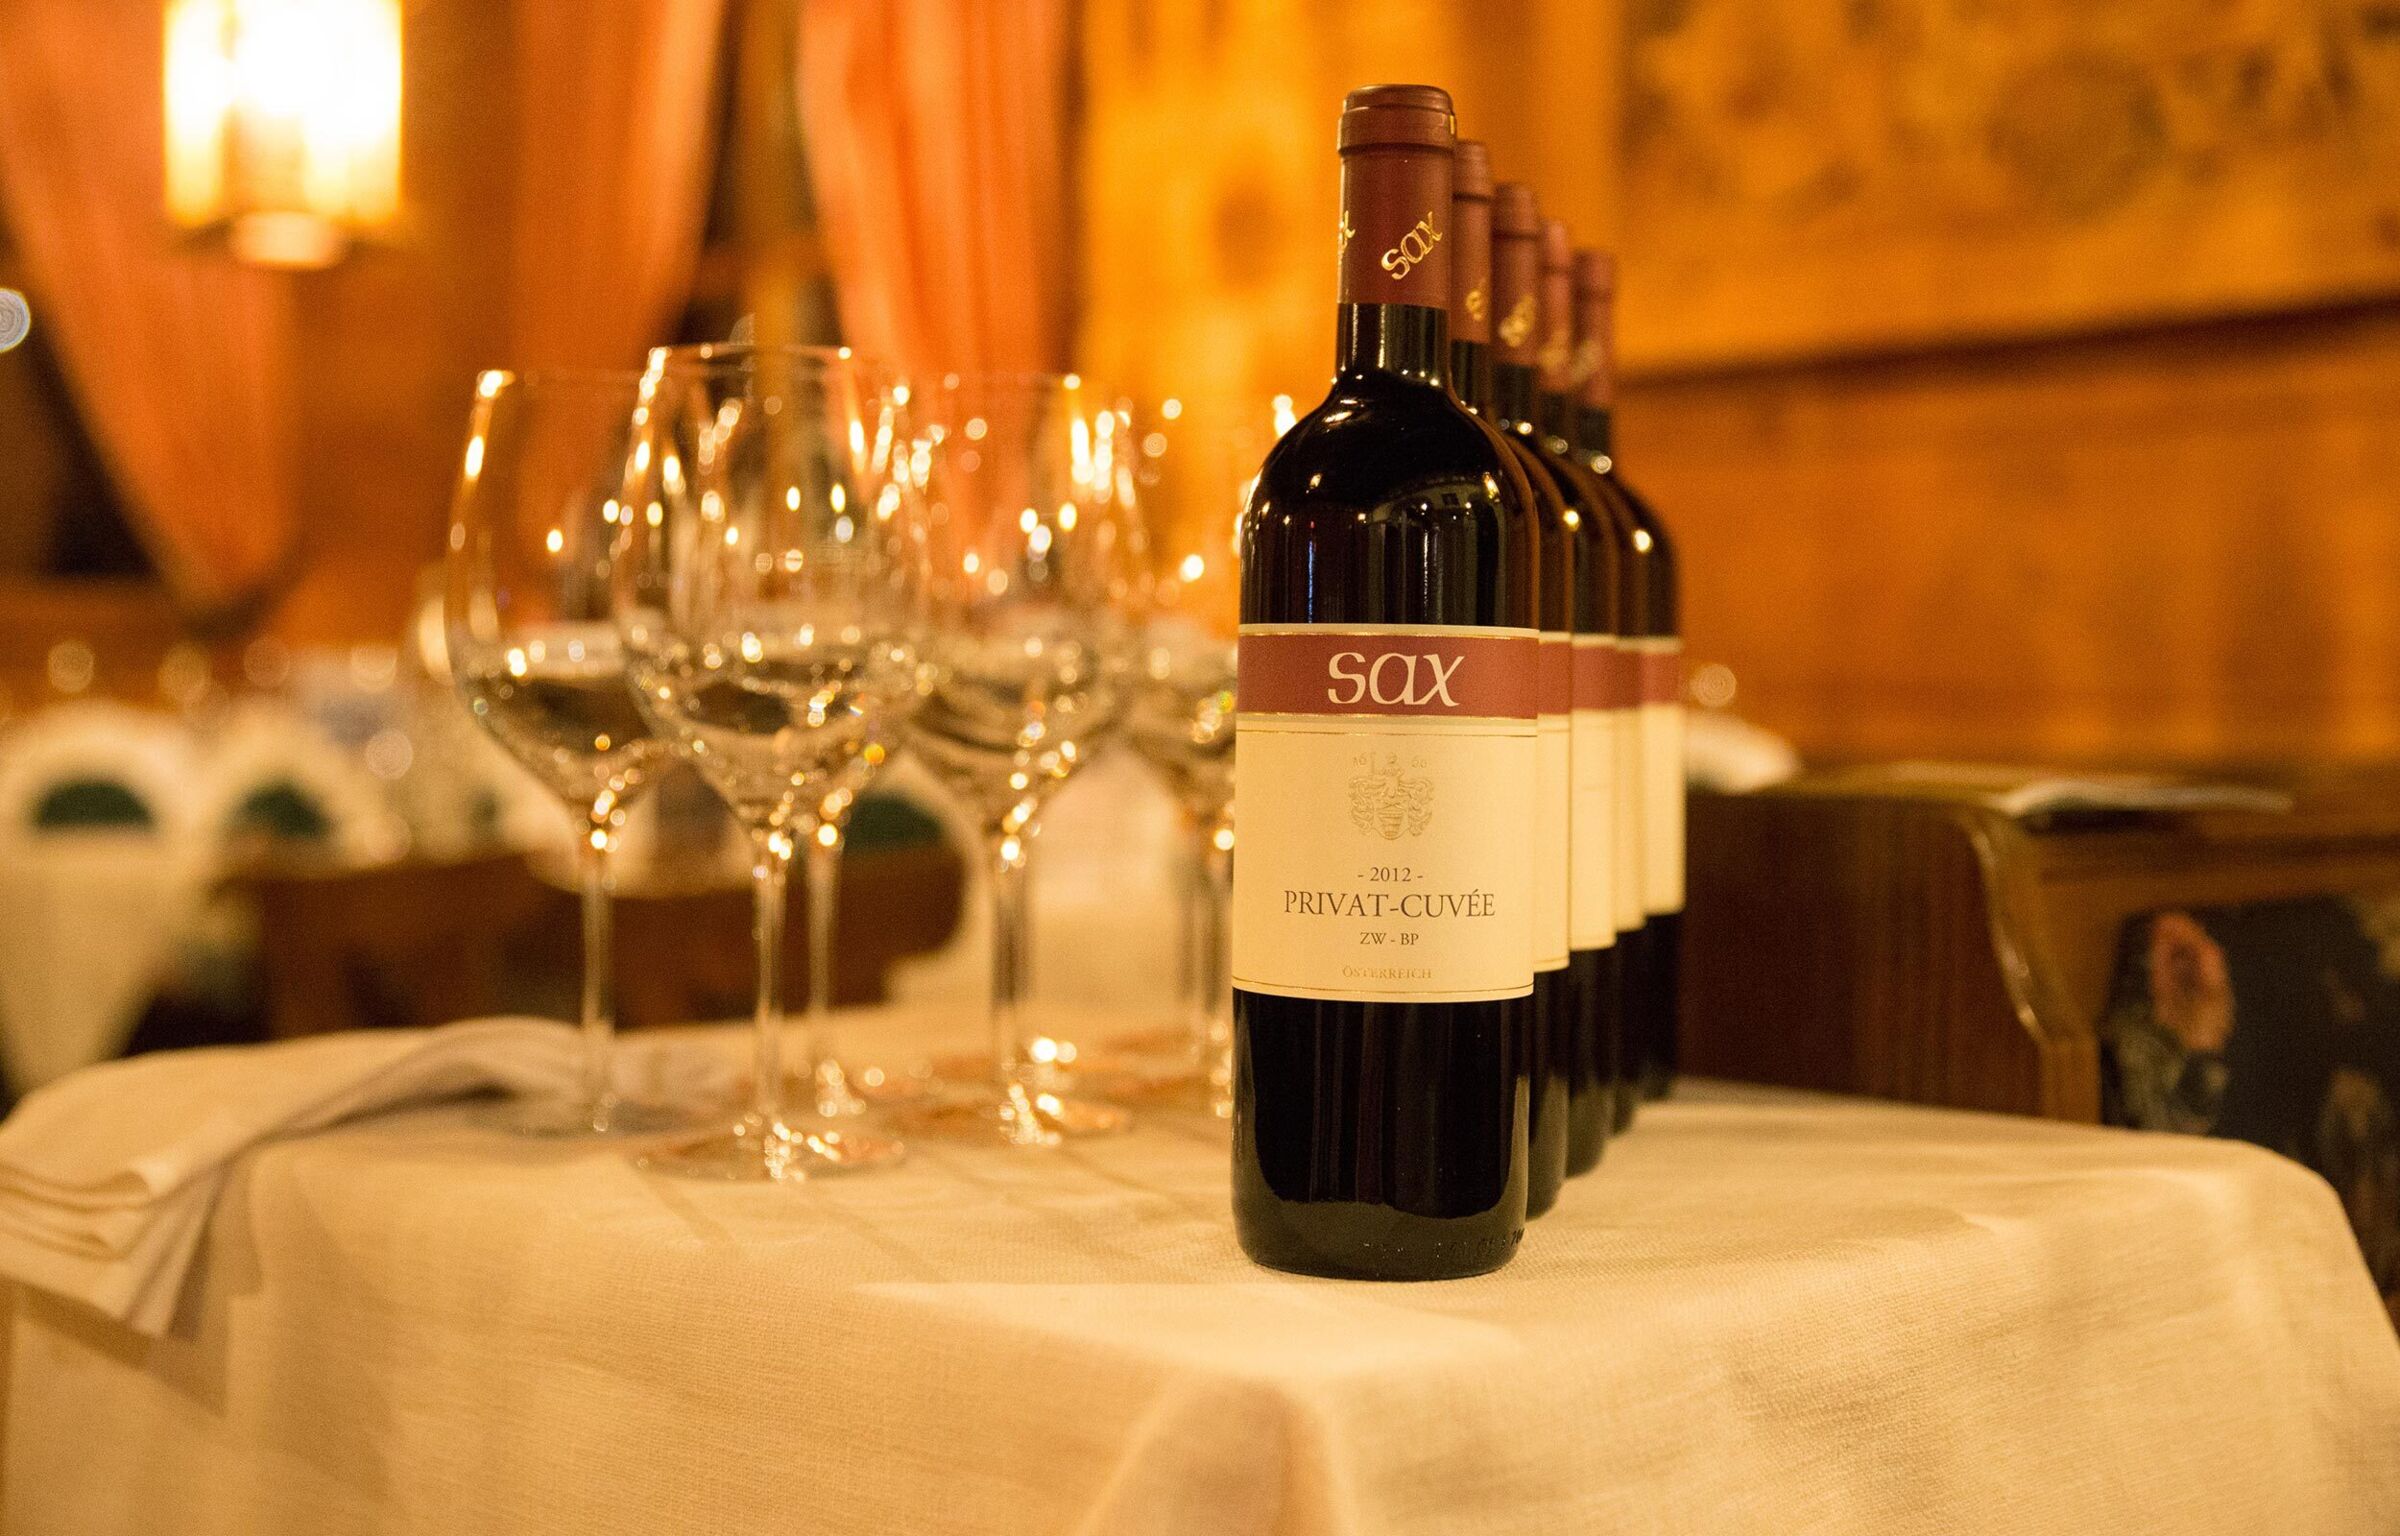 Bottiglia di vino e bicchieri da vino su un tavolo con tovaglia bianca